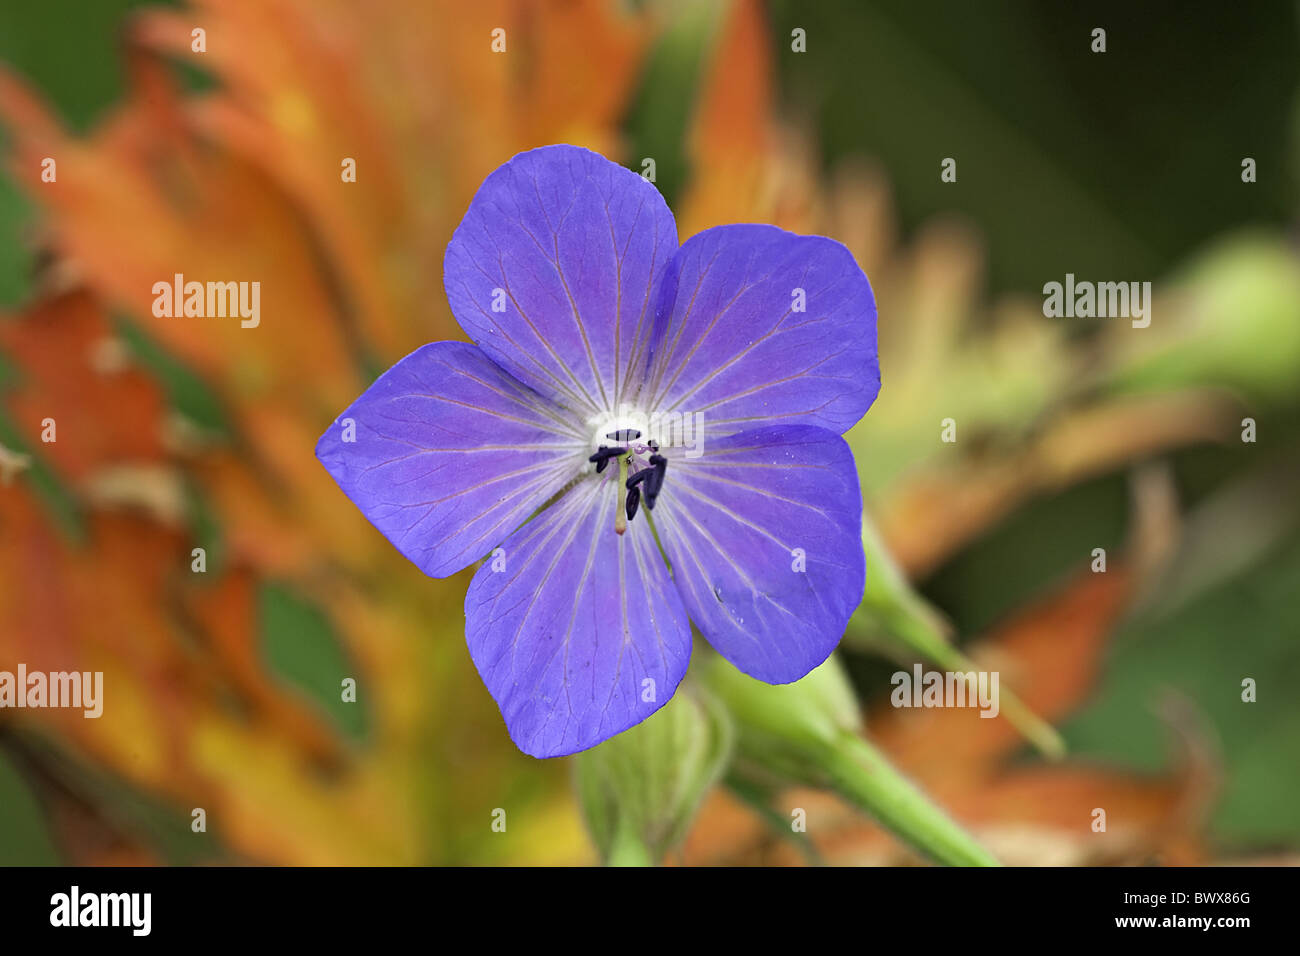 Geranium Pratense Wiese Storchschnabel blaue Wiesen Stockfotografie Farbe Pflanze Staubblätter Blumen - Blume Storchschnabel Blüten Blüte Stigma Alamy Blume